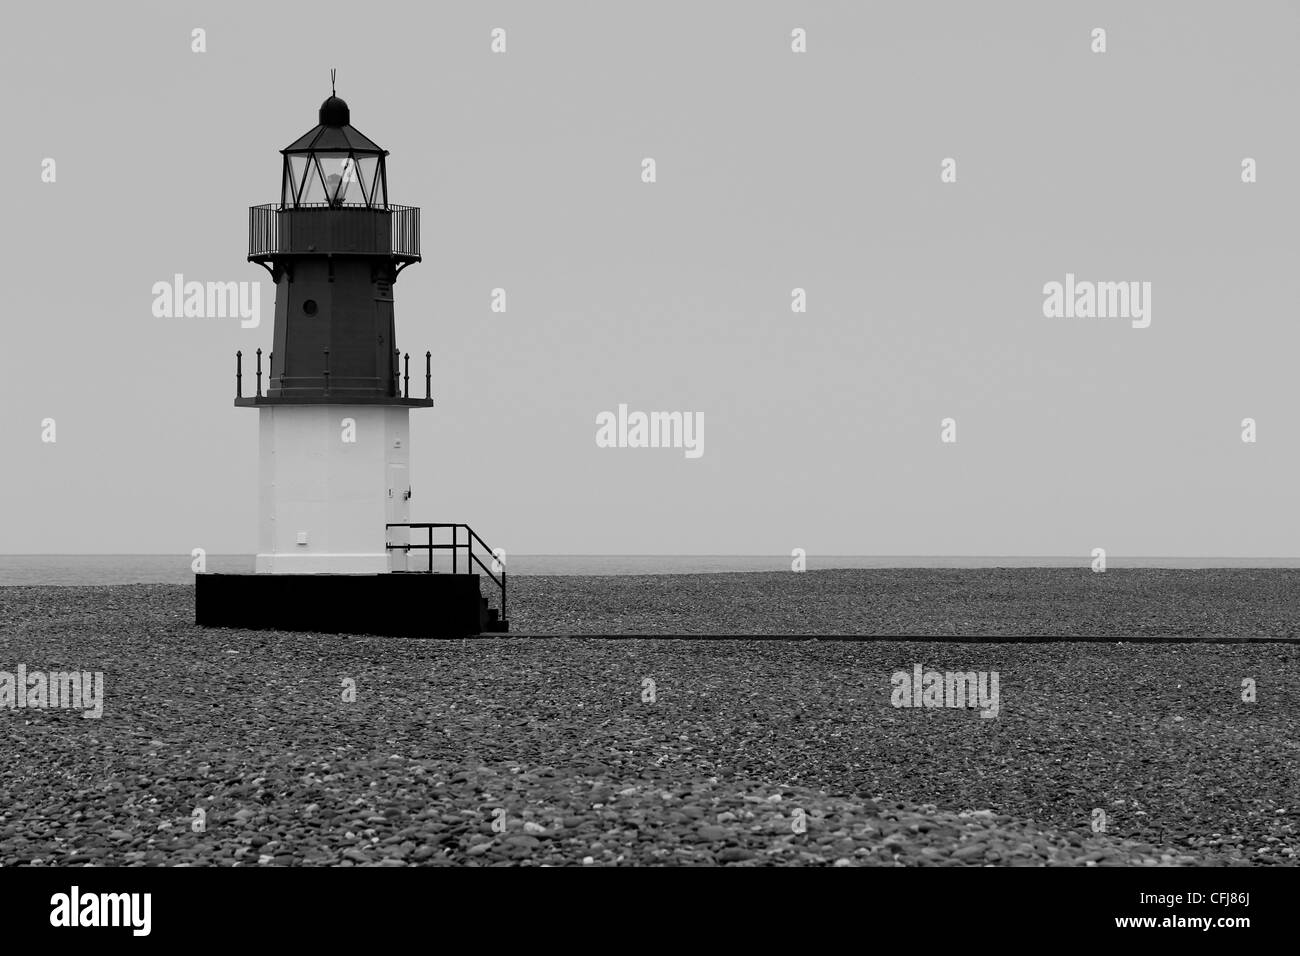 La imagen en blanco y negro de un faro sobre una playa de guijarros con marea baja. Foto de stock